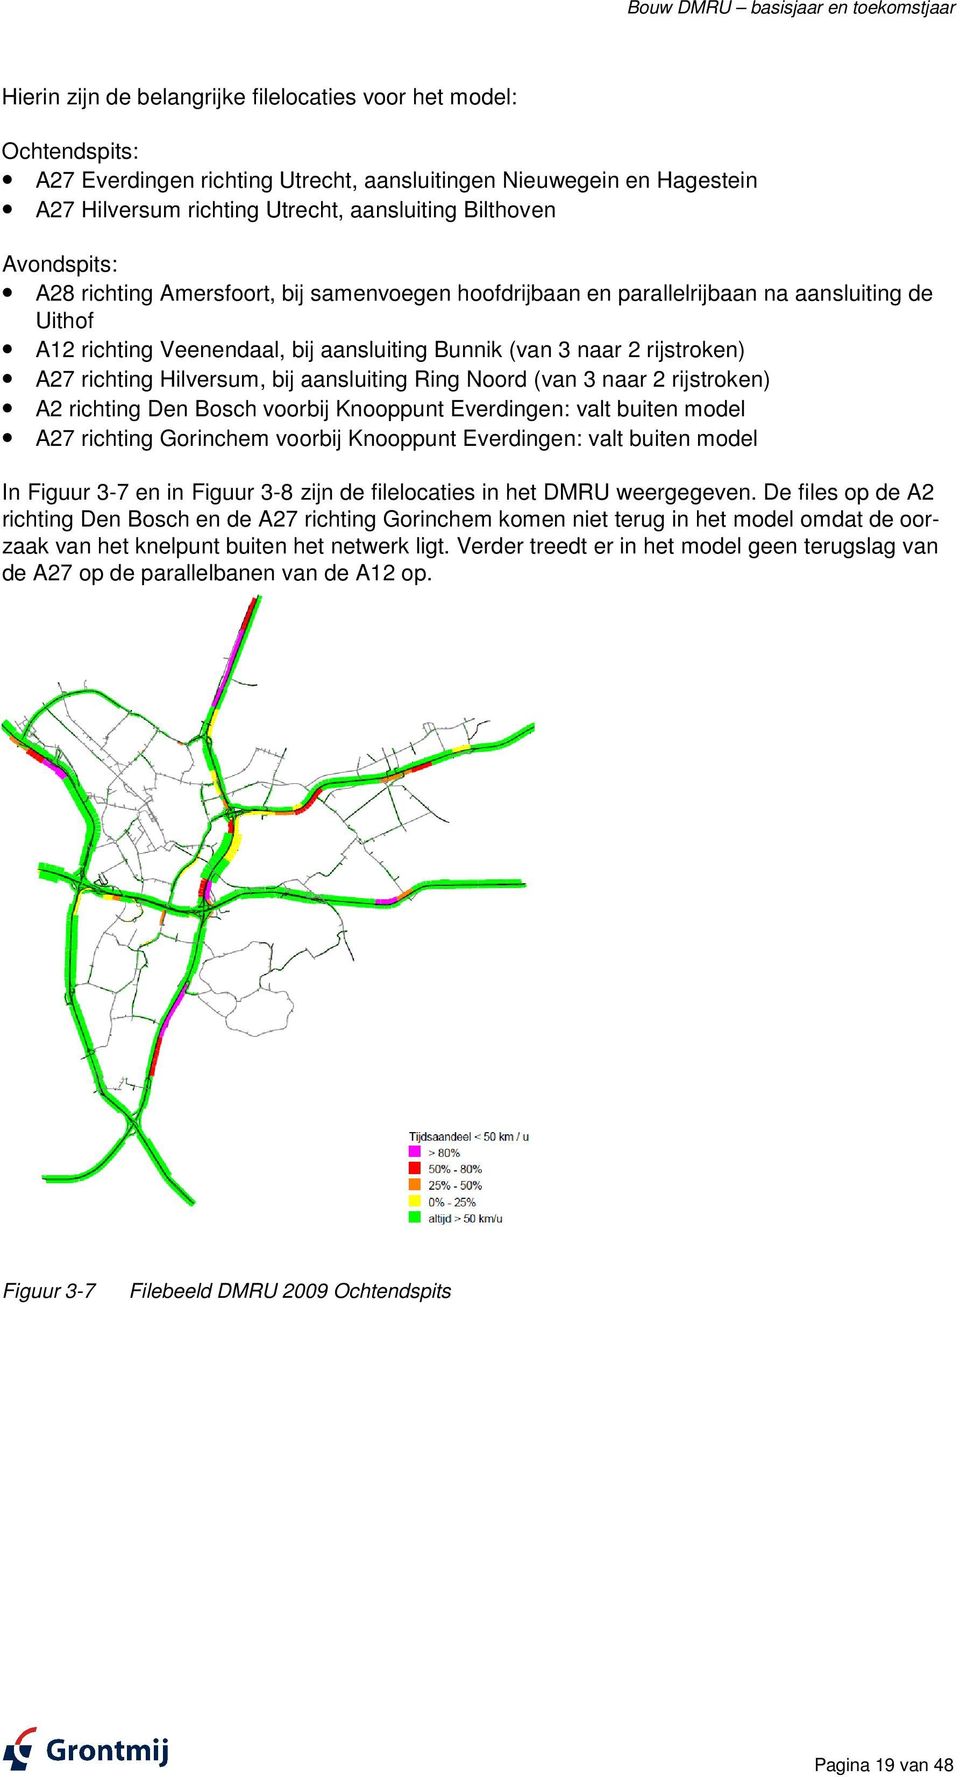 naar 2 rijstroken) A27 richting Hilversum, bij aansluiting Ring Noord (van 3 naar 2 rijstroken) A2 richting Den Bosch voorbij Knooppunt Everdingen: valt buiten model A27 richting Gorinchem voorbij